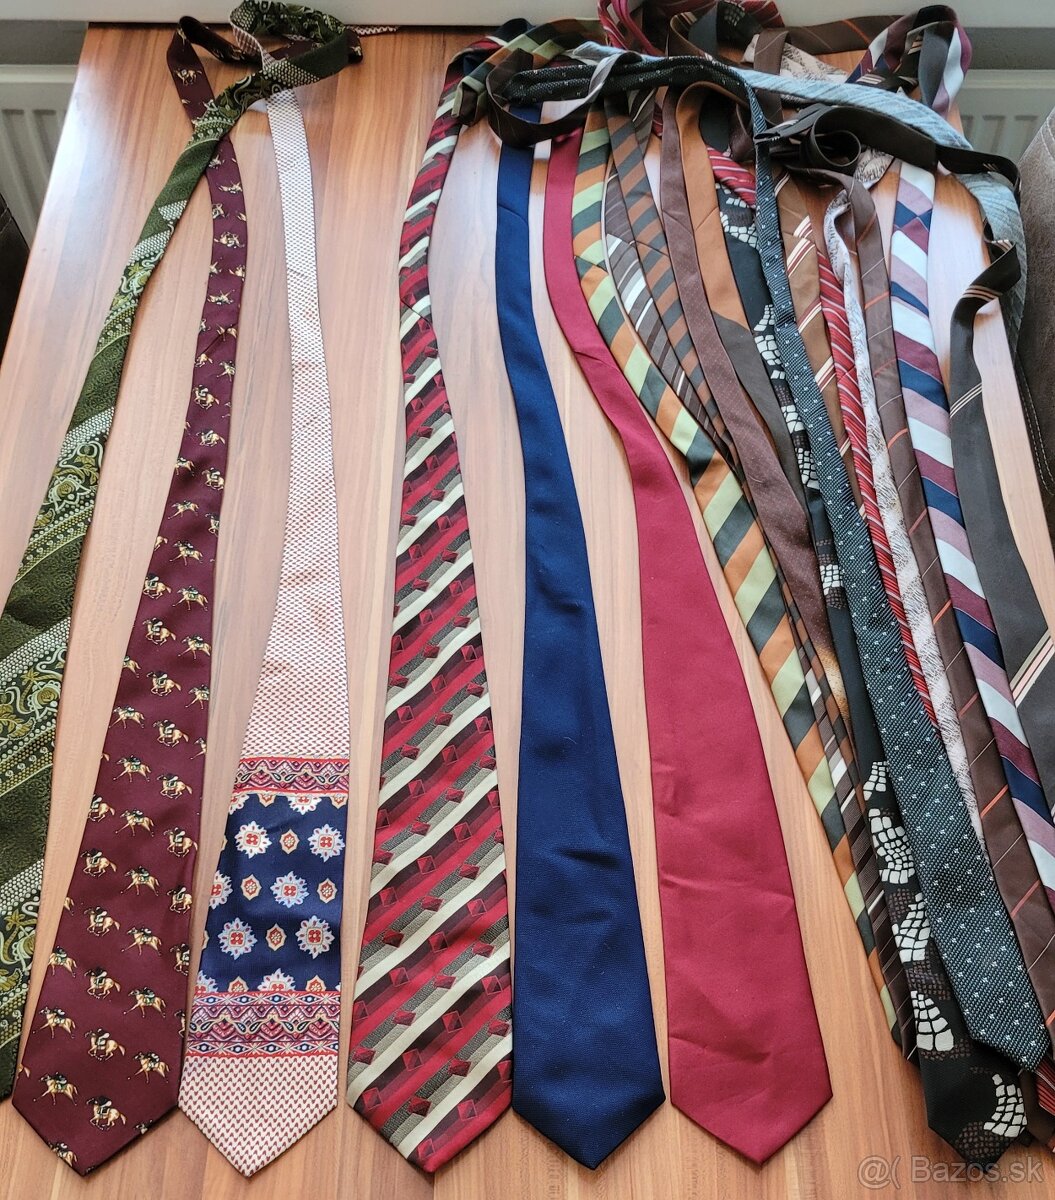 Predám väčšie množstvo rôznych pánskych kravát